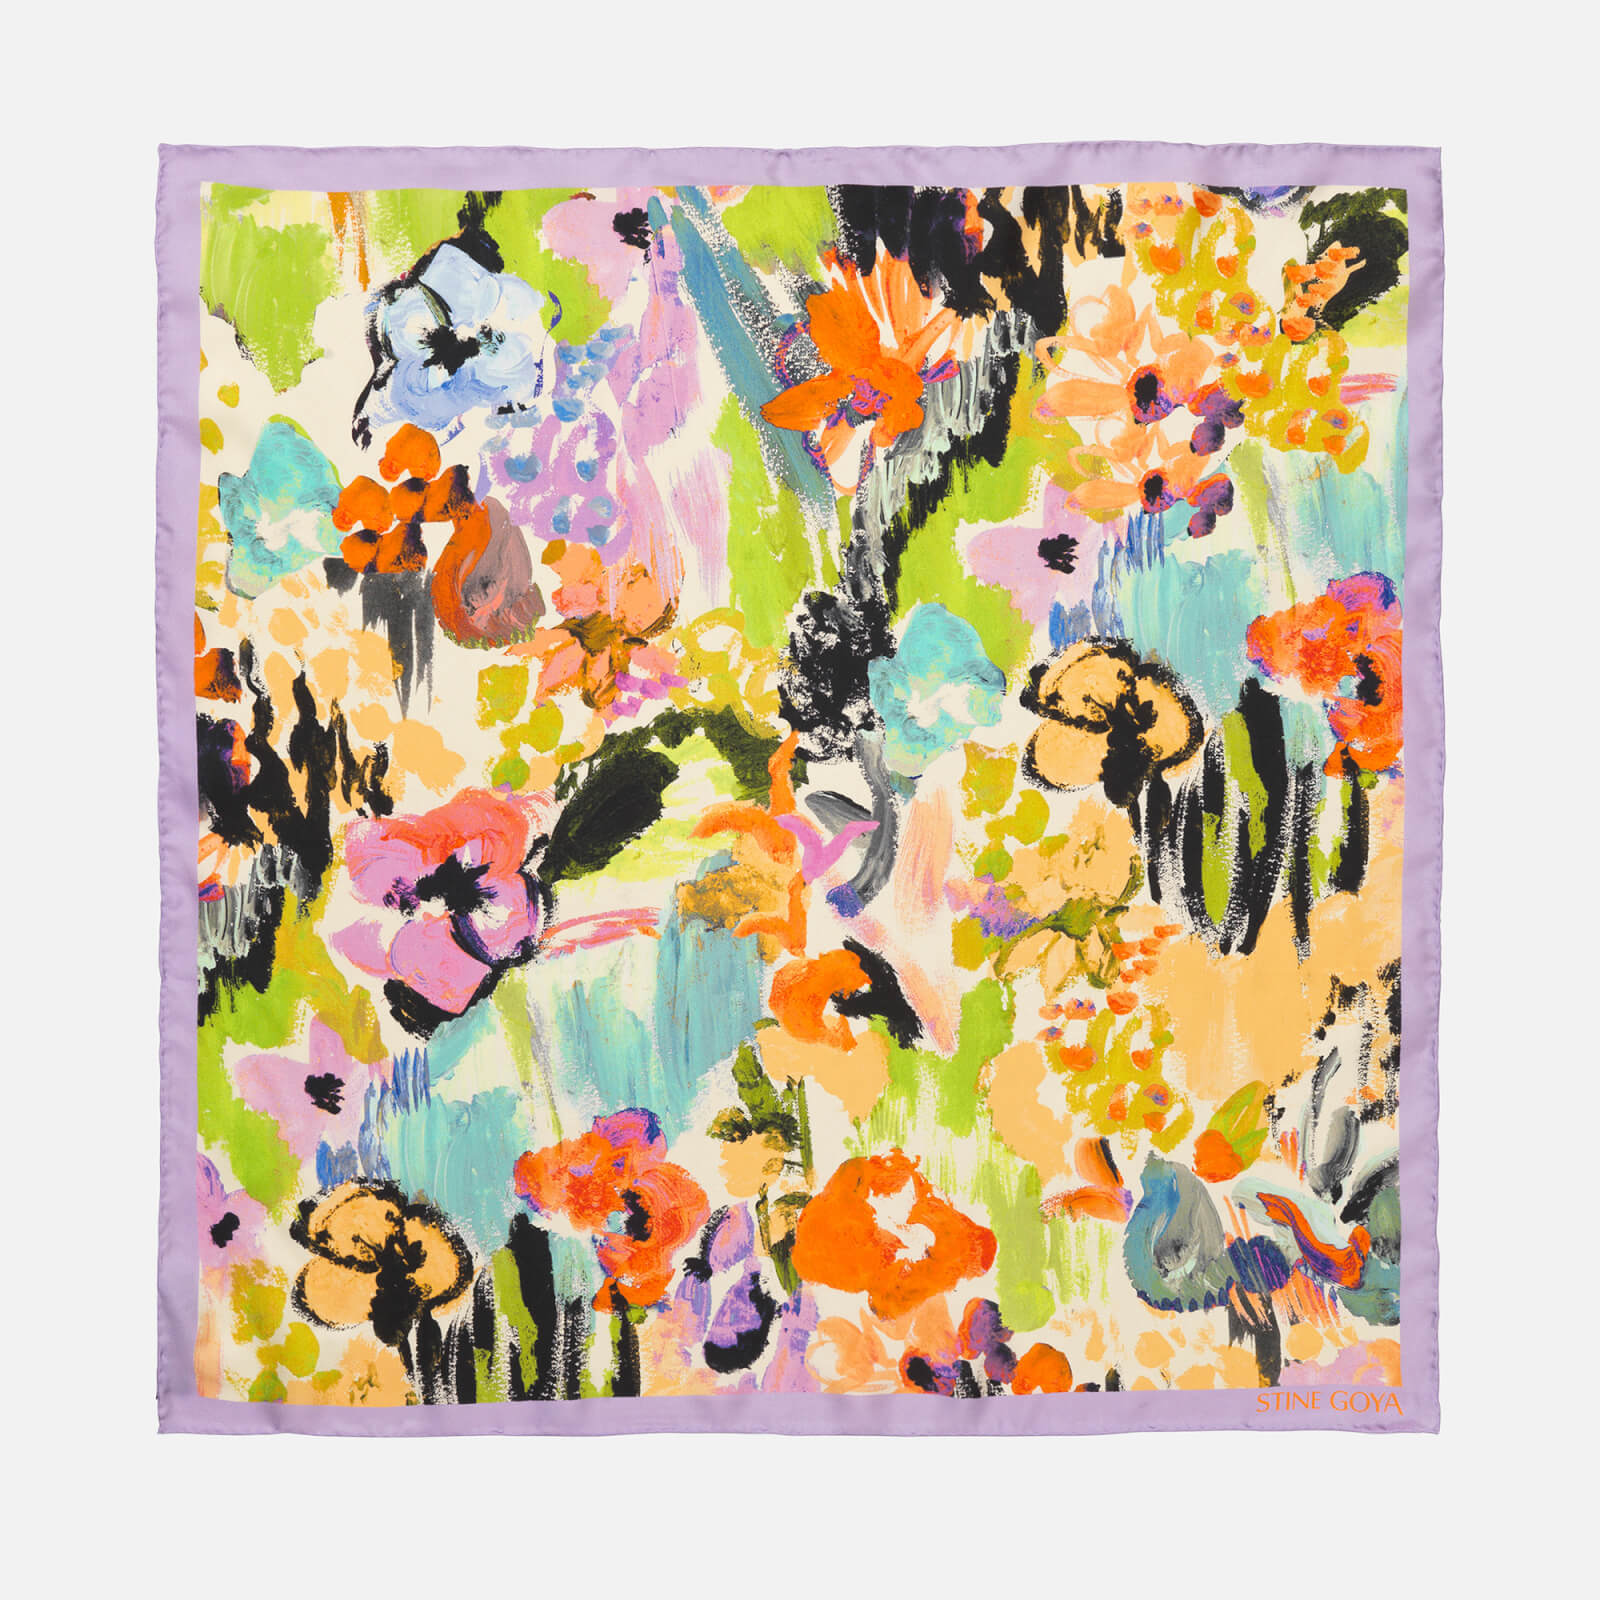 Stine Goya Women's Yumma Silk Scarf - Abstract Floral